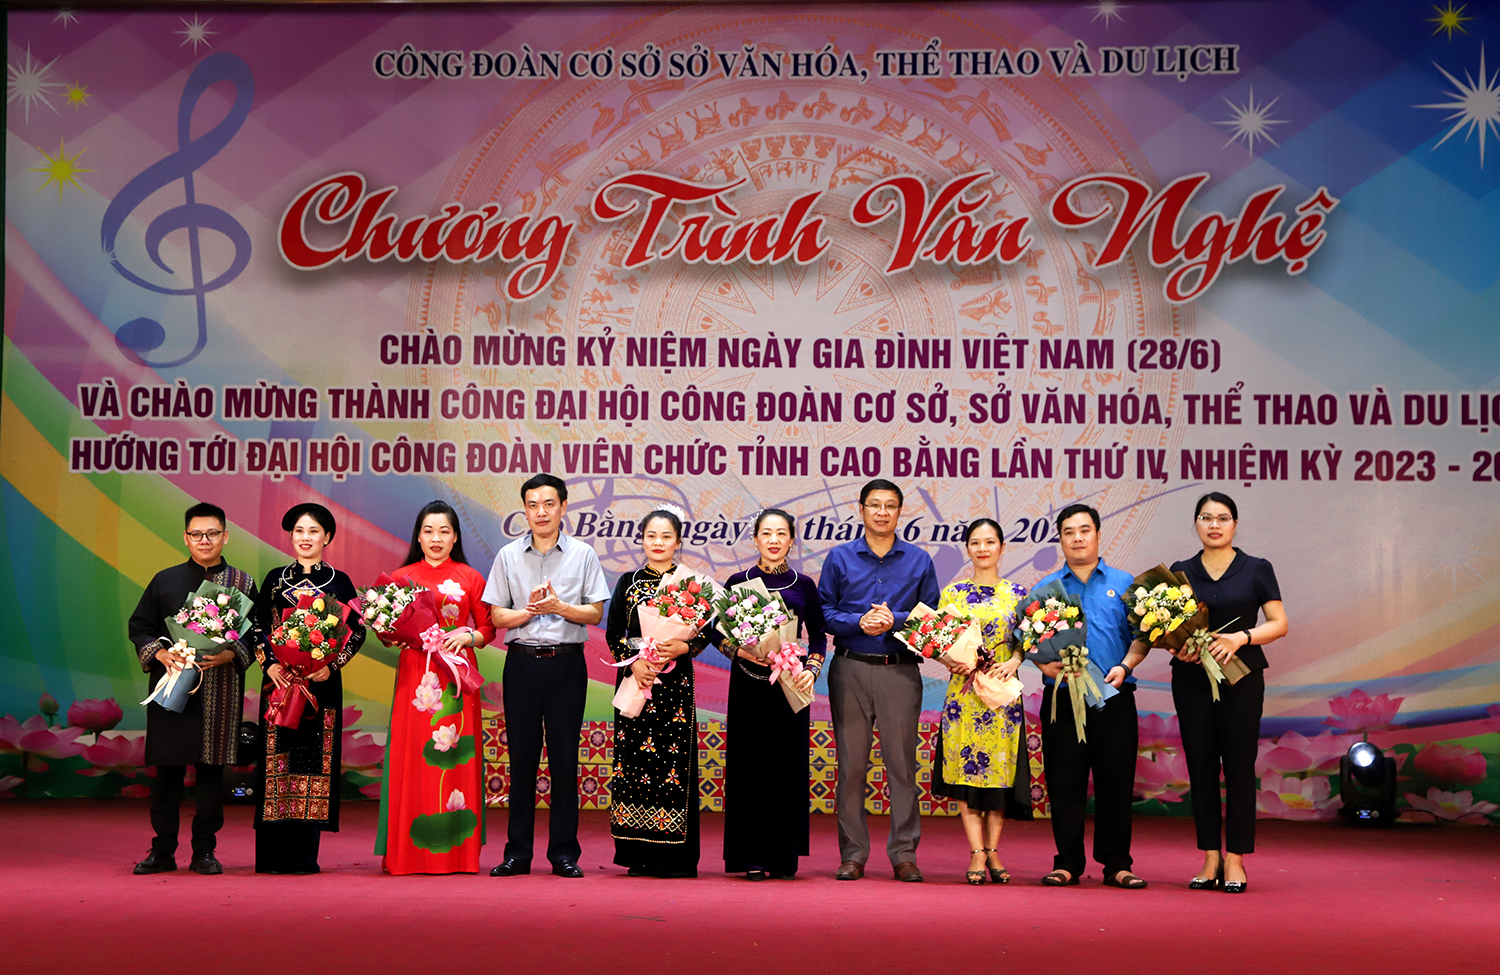 Chương trình văn nghệ chào mừng kỷ niệm Ngày Gia đình Việt Nam 28-6